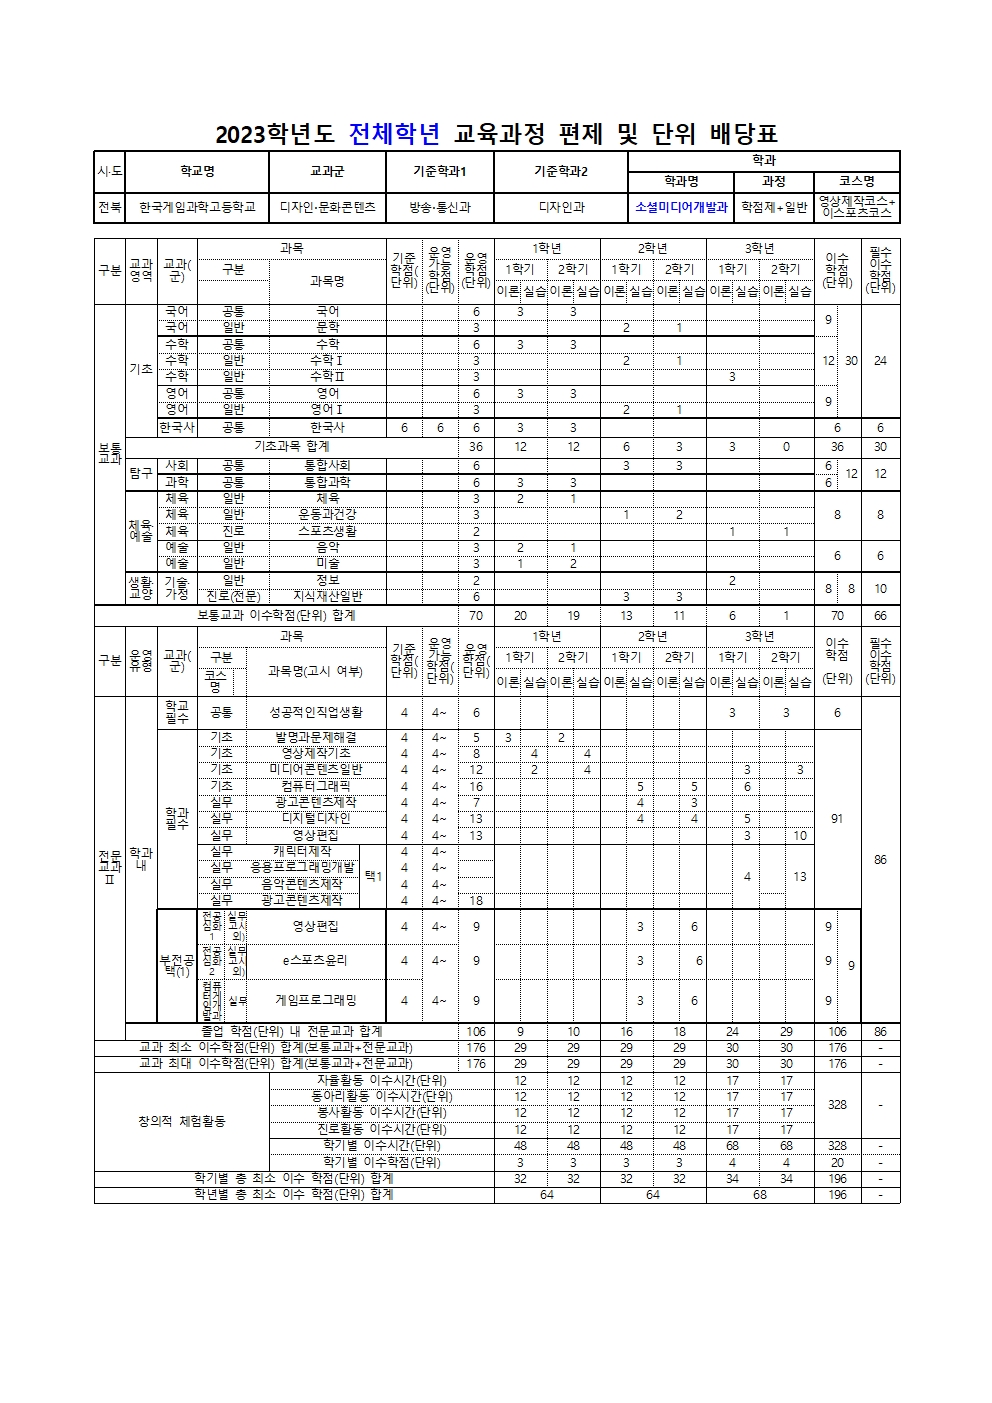 한국게임과학고등학교 2023학년도 교육과정 편성표(컨설팅수정본)008